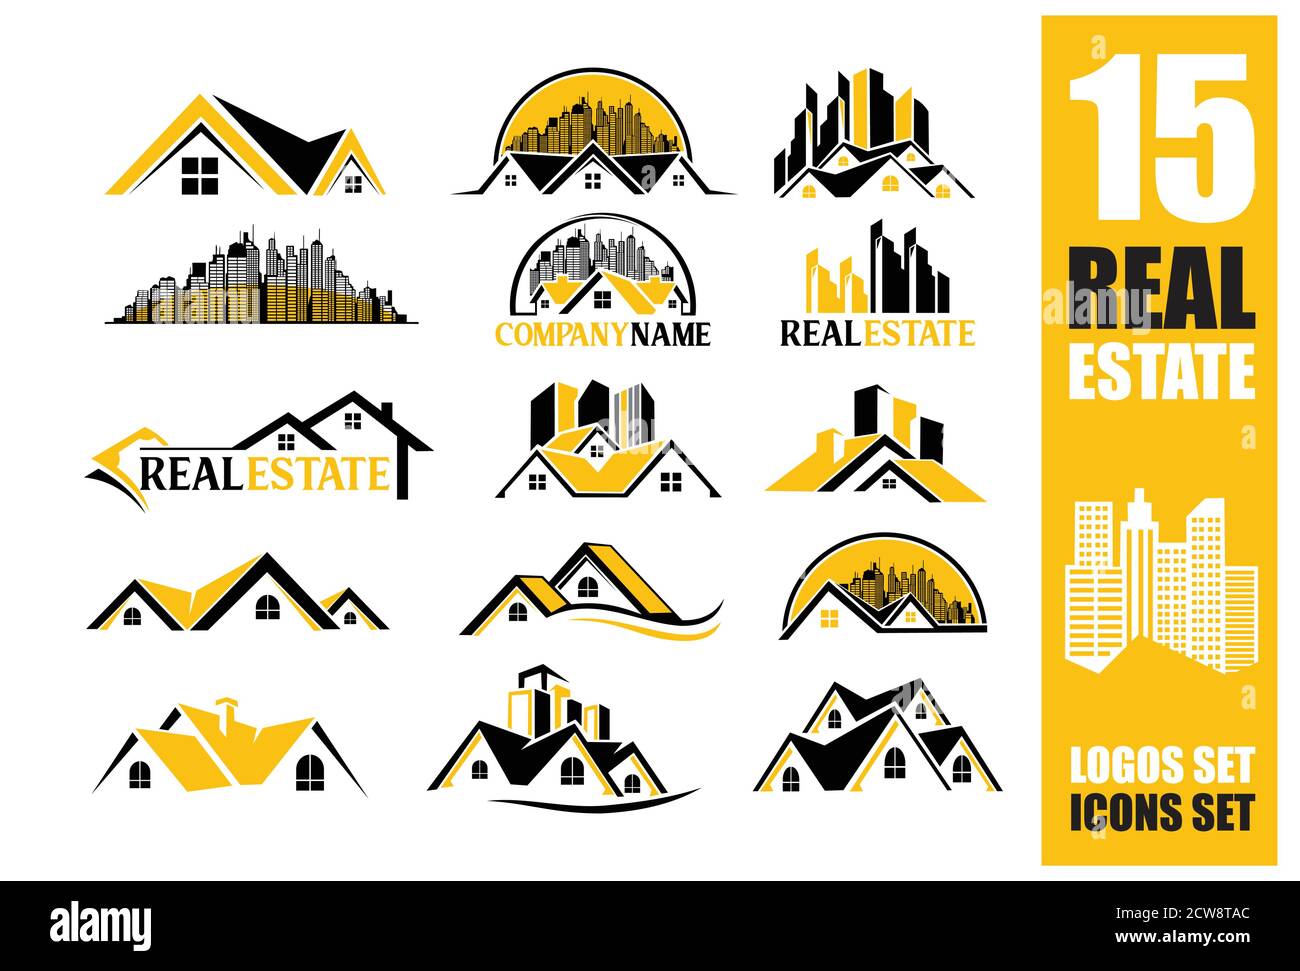 Un logo et une icône Vector Set pour la société immobilière dans la zone de liste noire et jaune Illustration de Vecteur